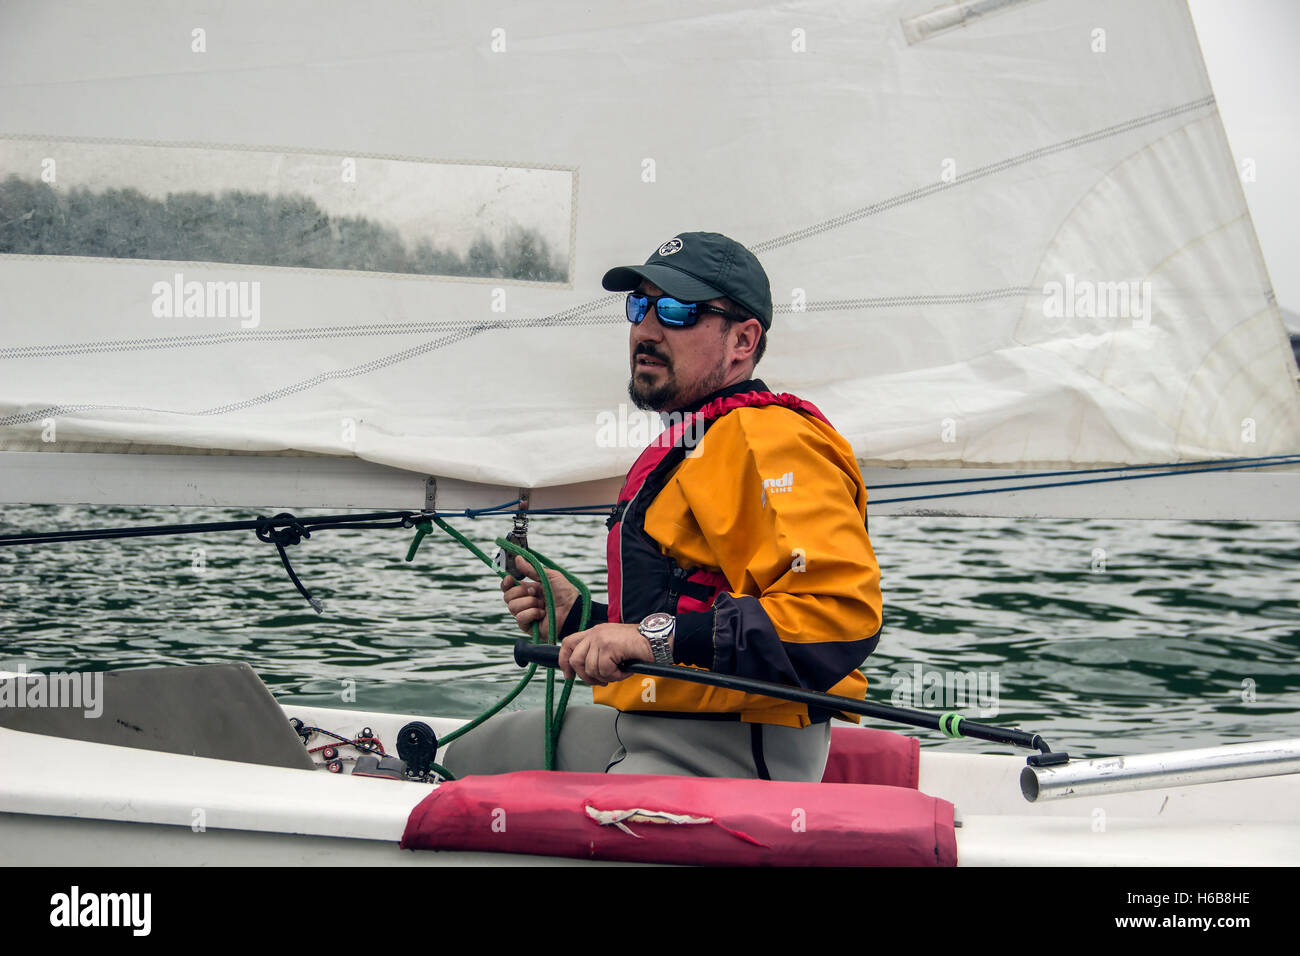 Belgrado Finn Cap 2016, Serbia - Boris Adjanski nella classe Finn barca a vela partecipa a uno dei match race regate Foto Stock